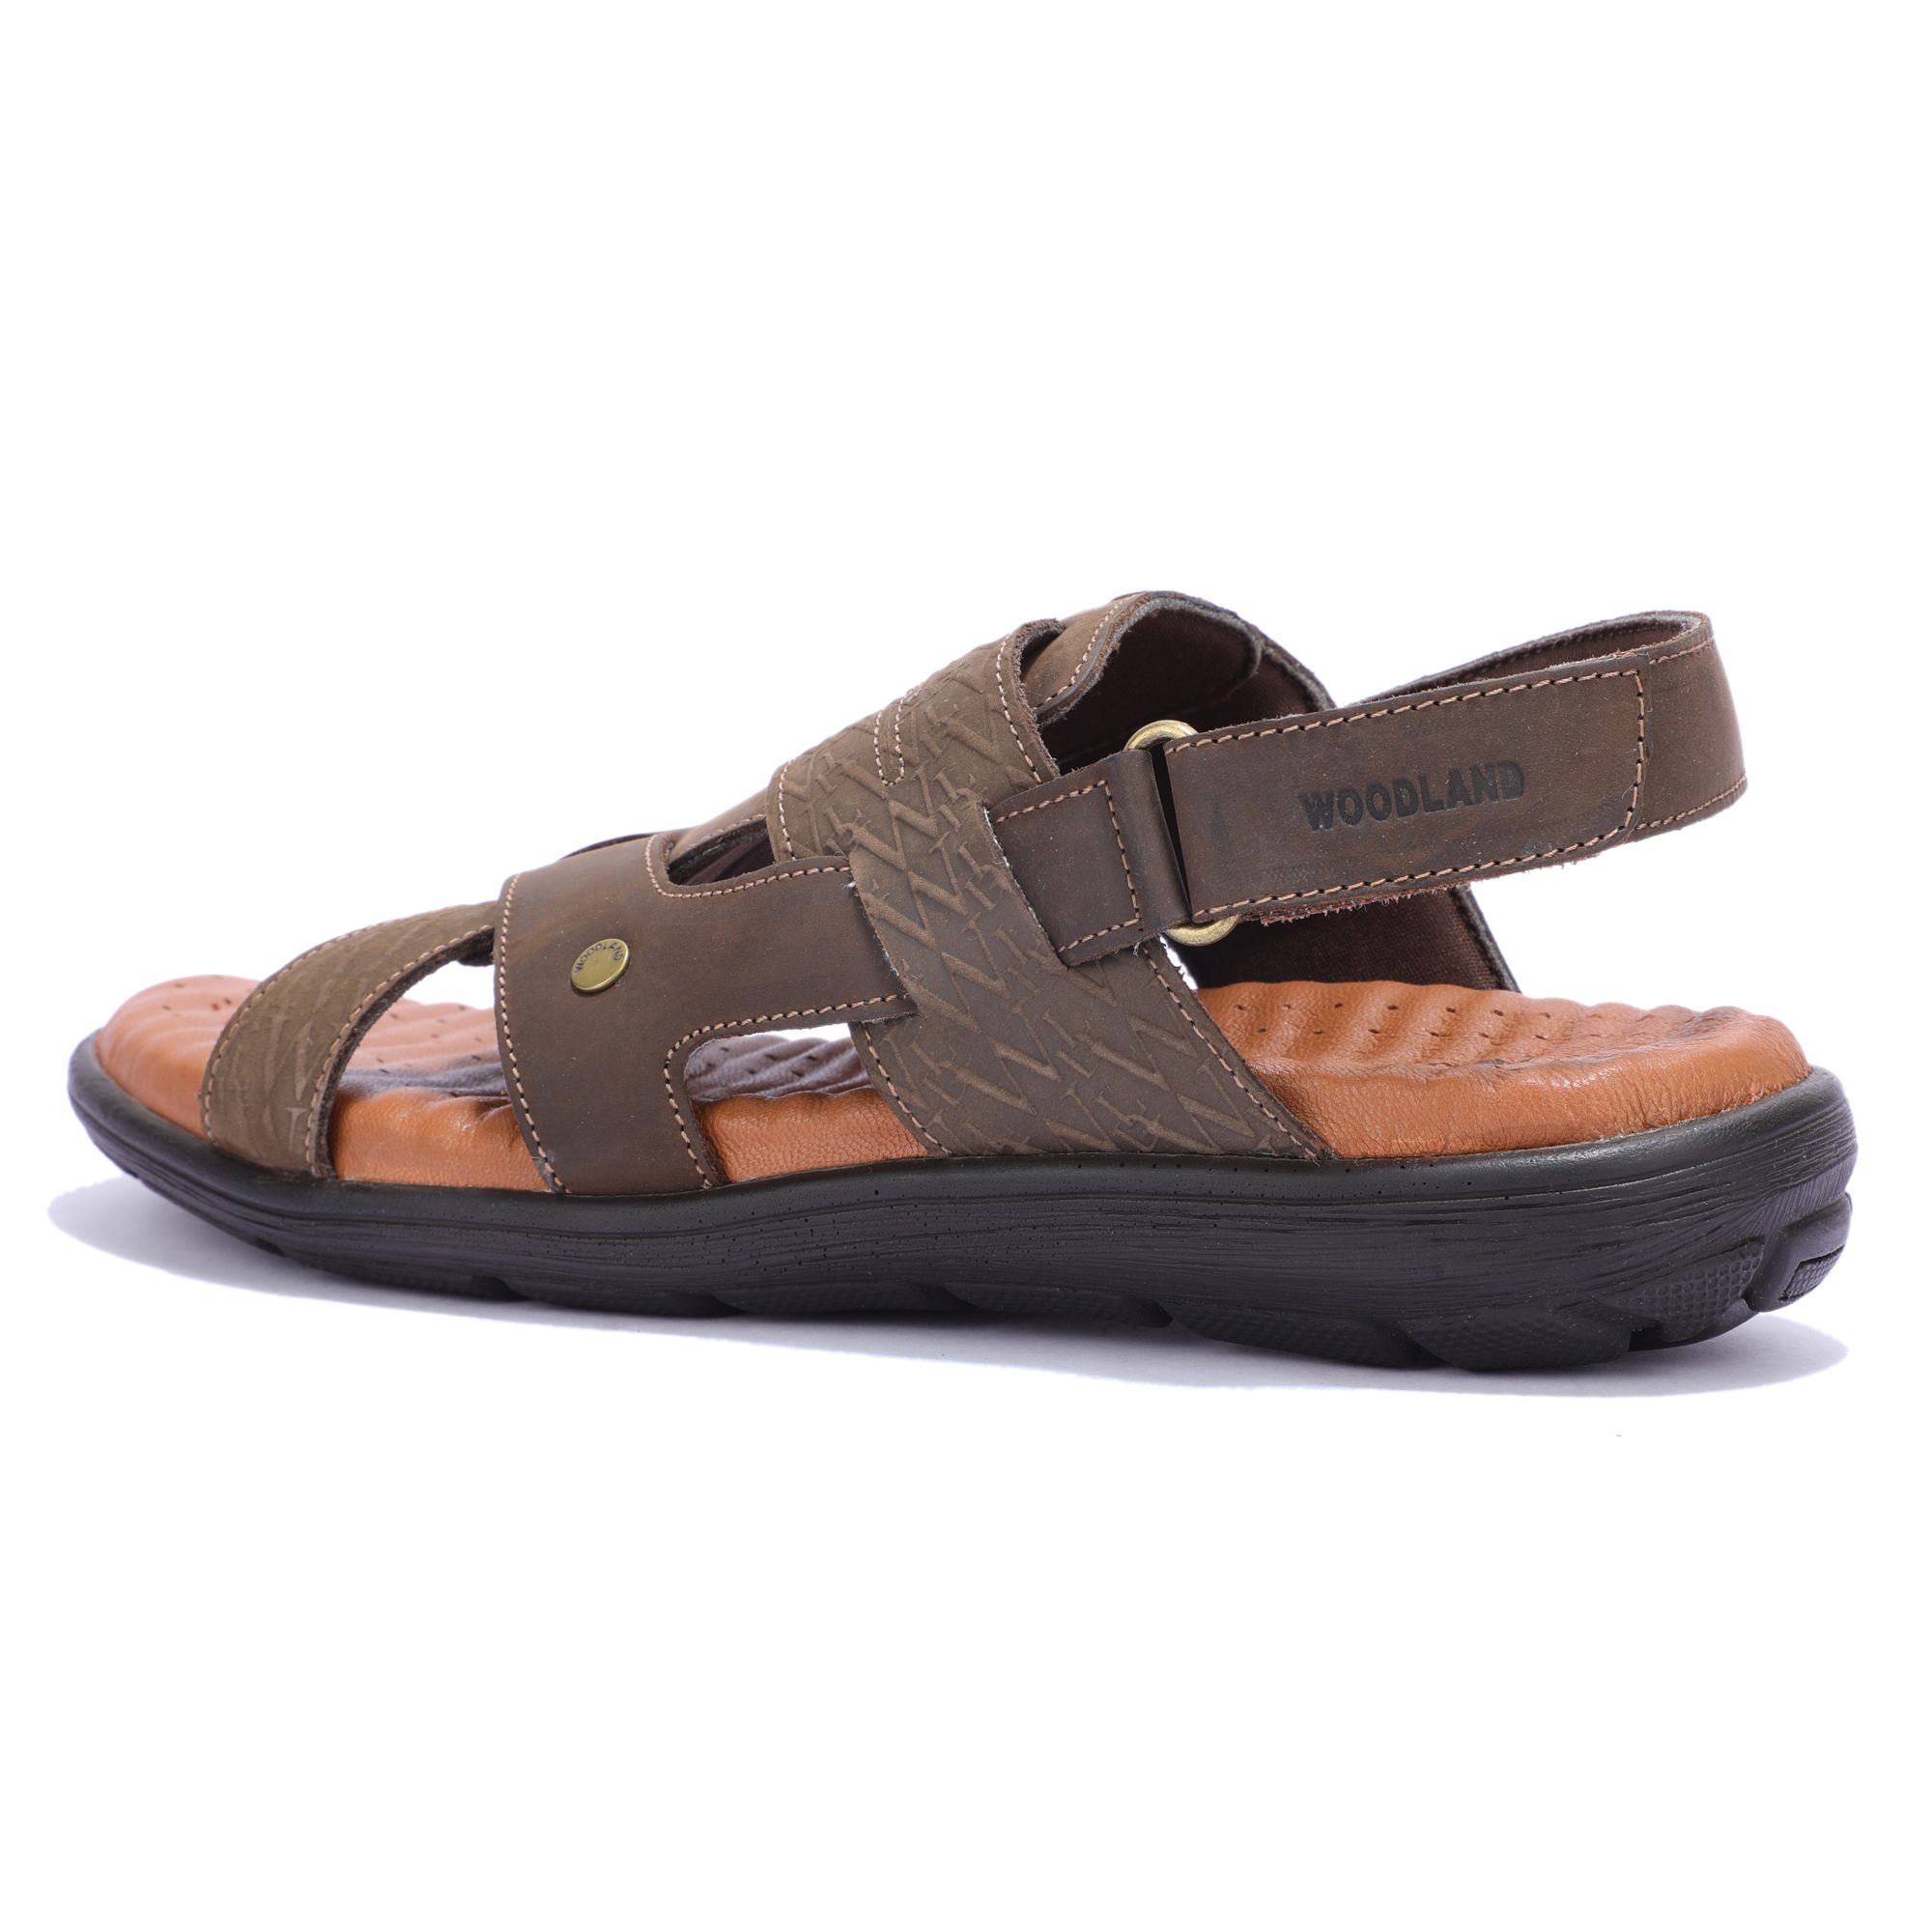 Dark brown floater sandal for men